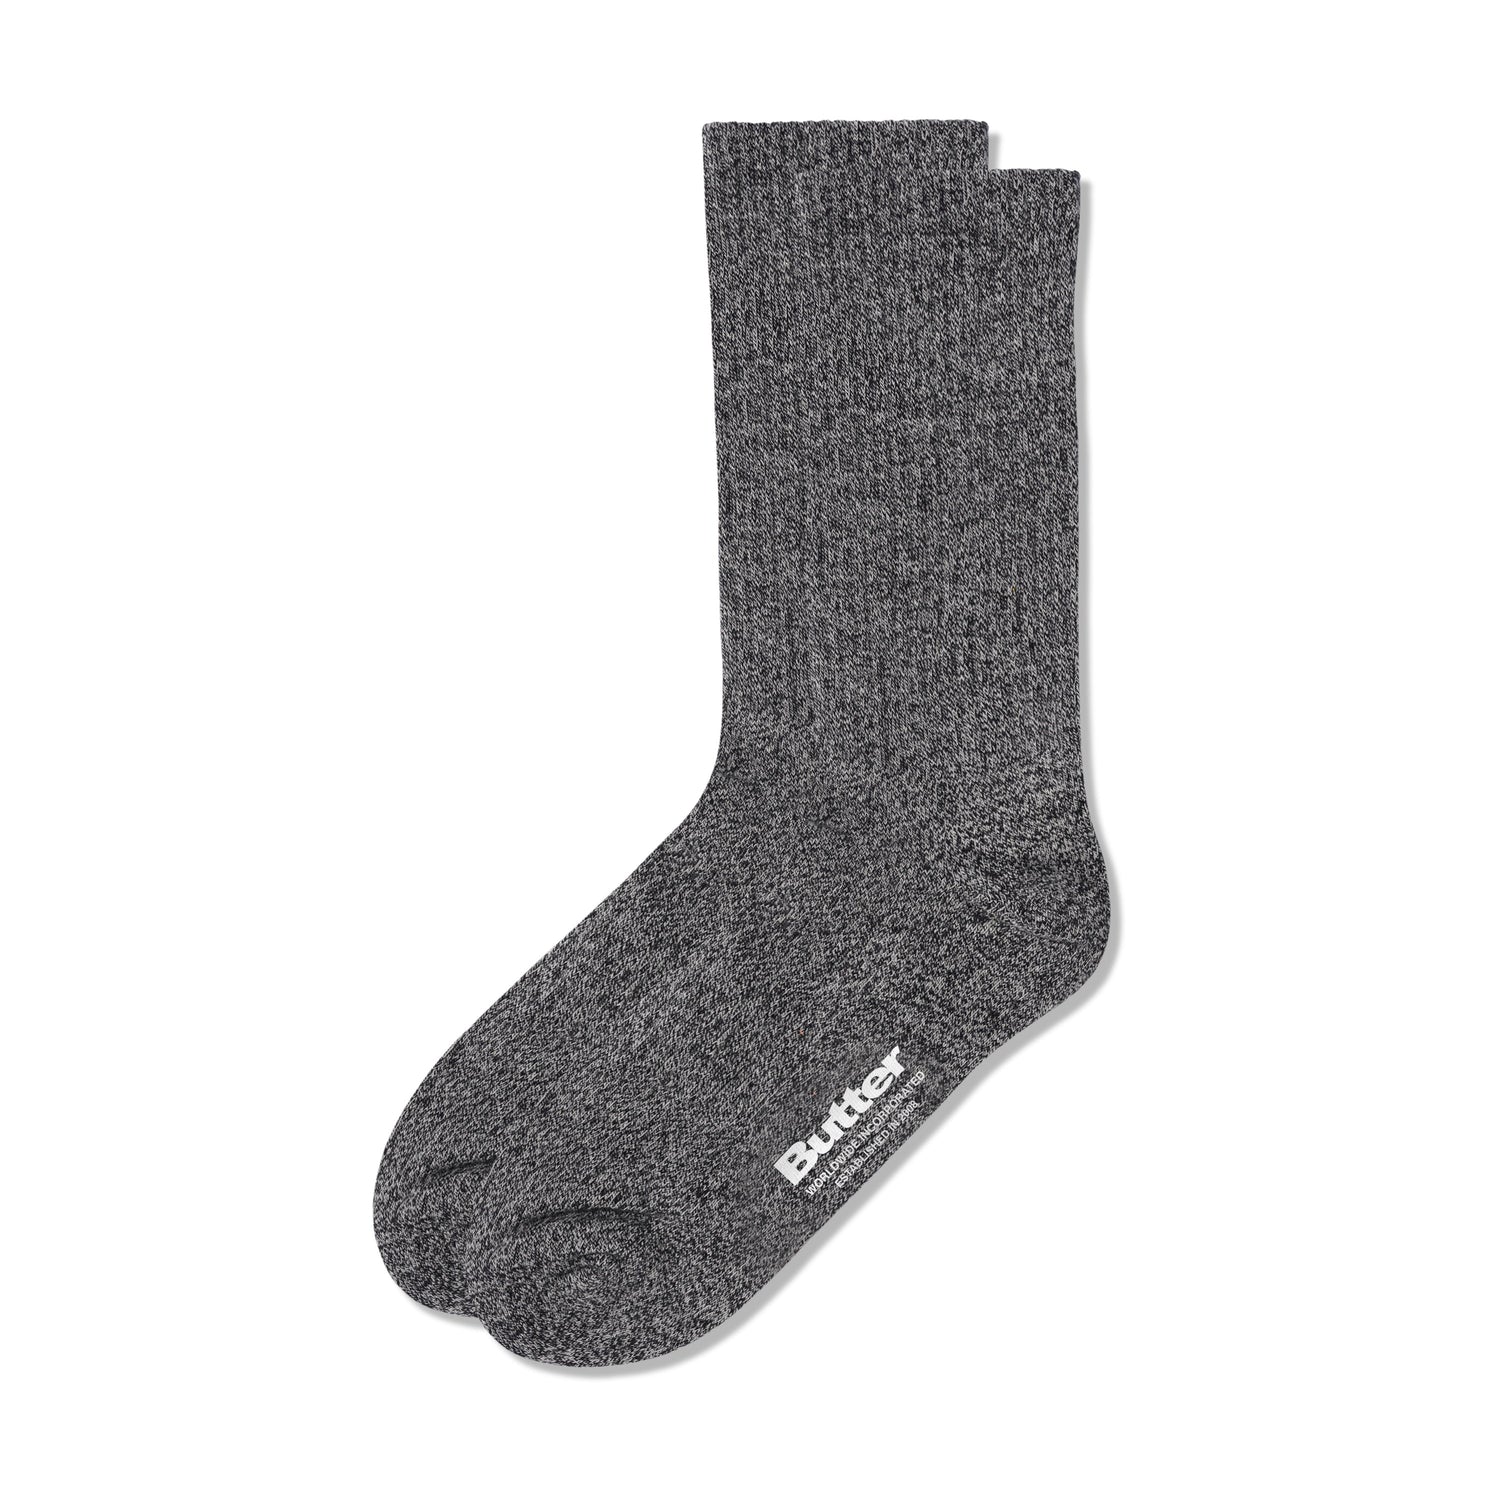 Marle Socks, Black